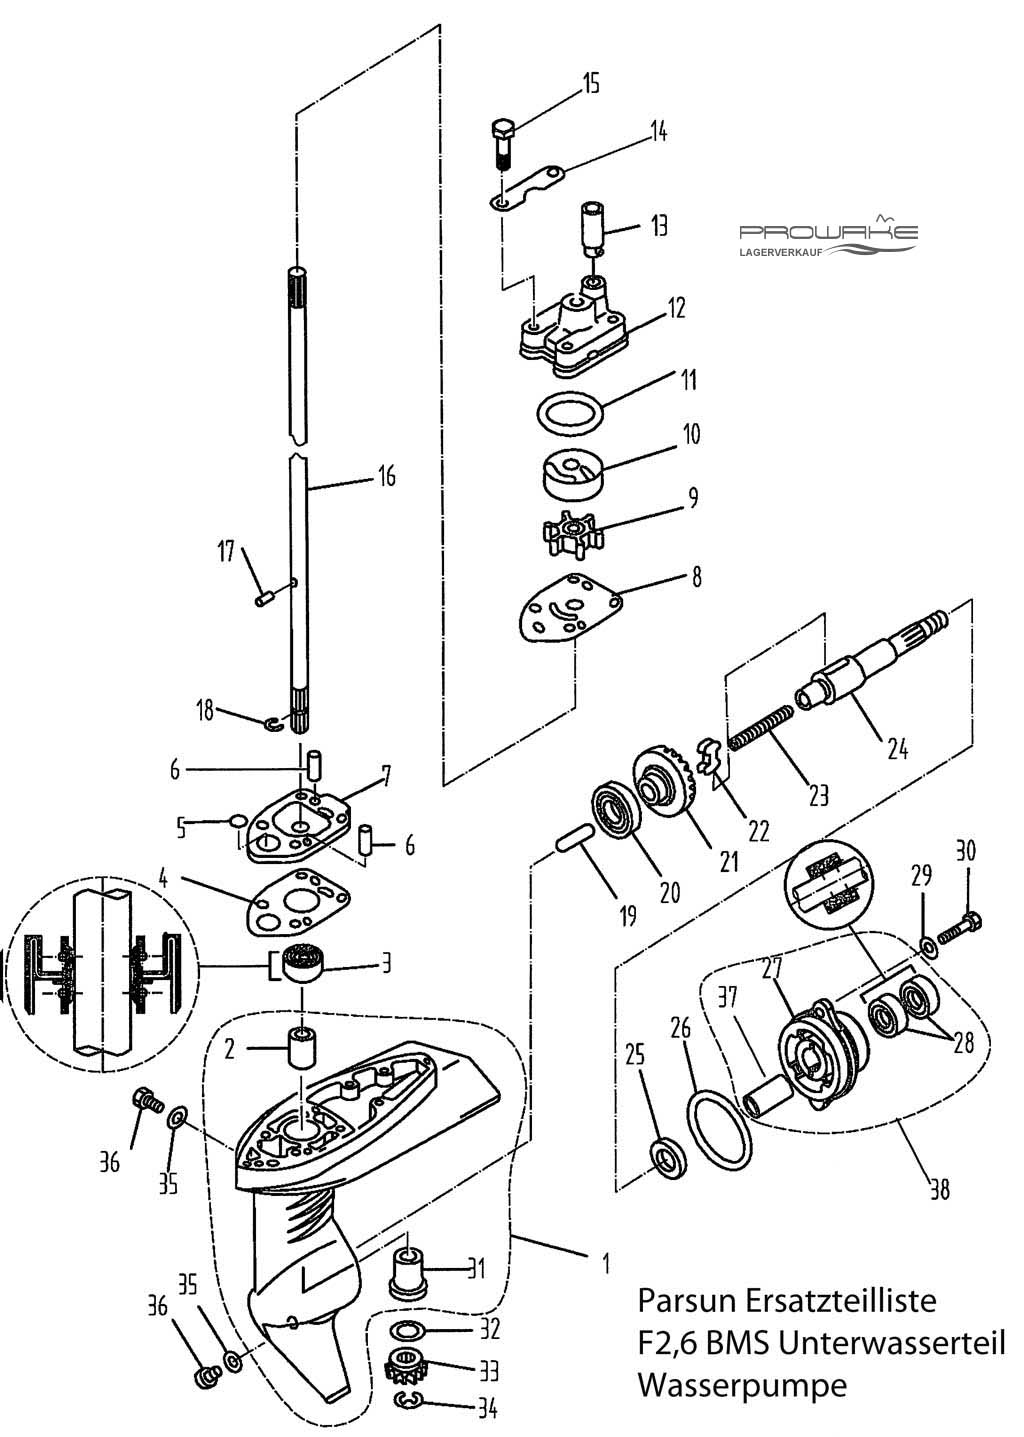 Parsun F2.6  Ersatzteile / Spare Parts: Unterwasserteil Wasserpumpe